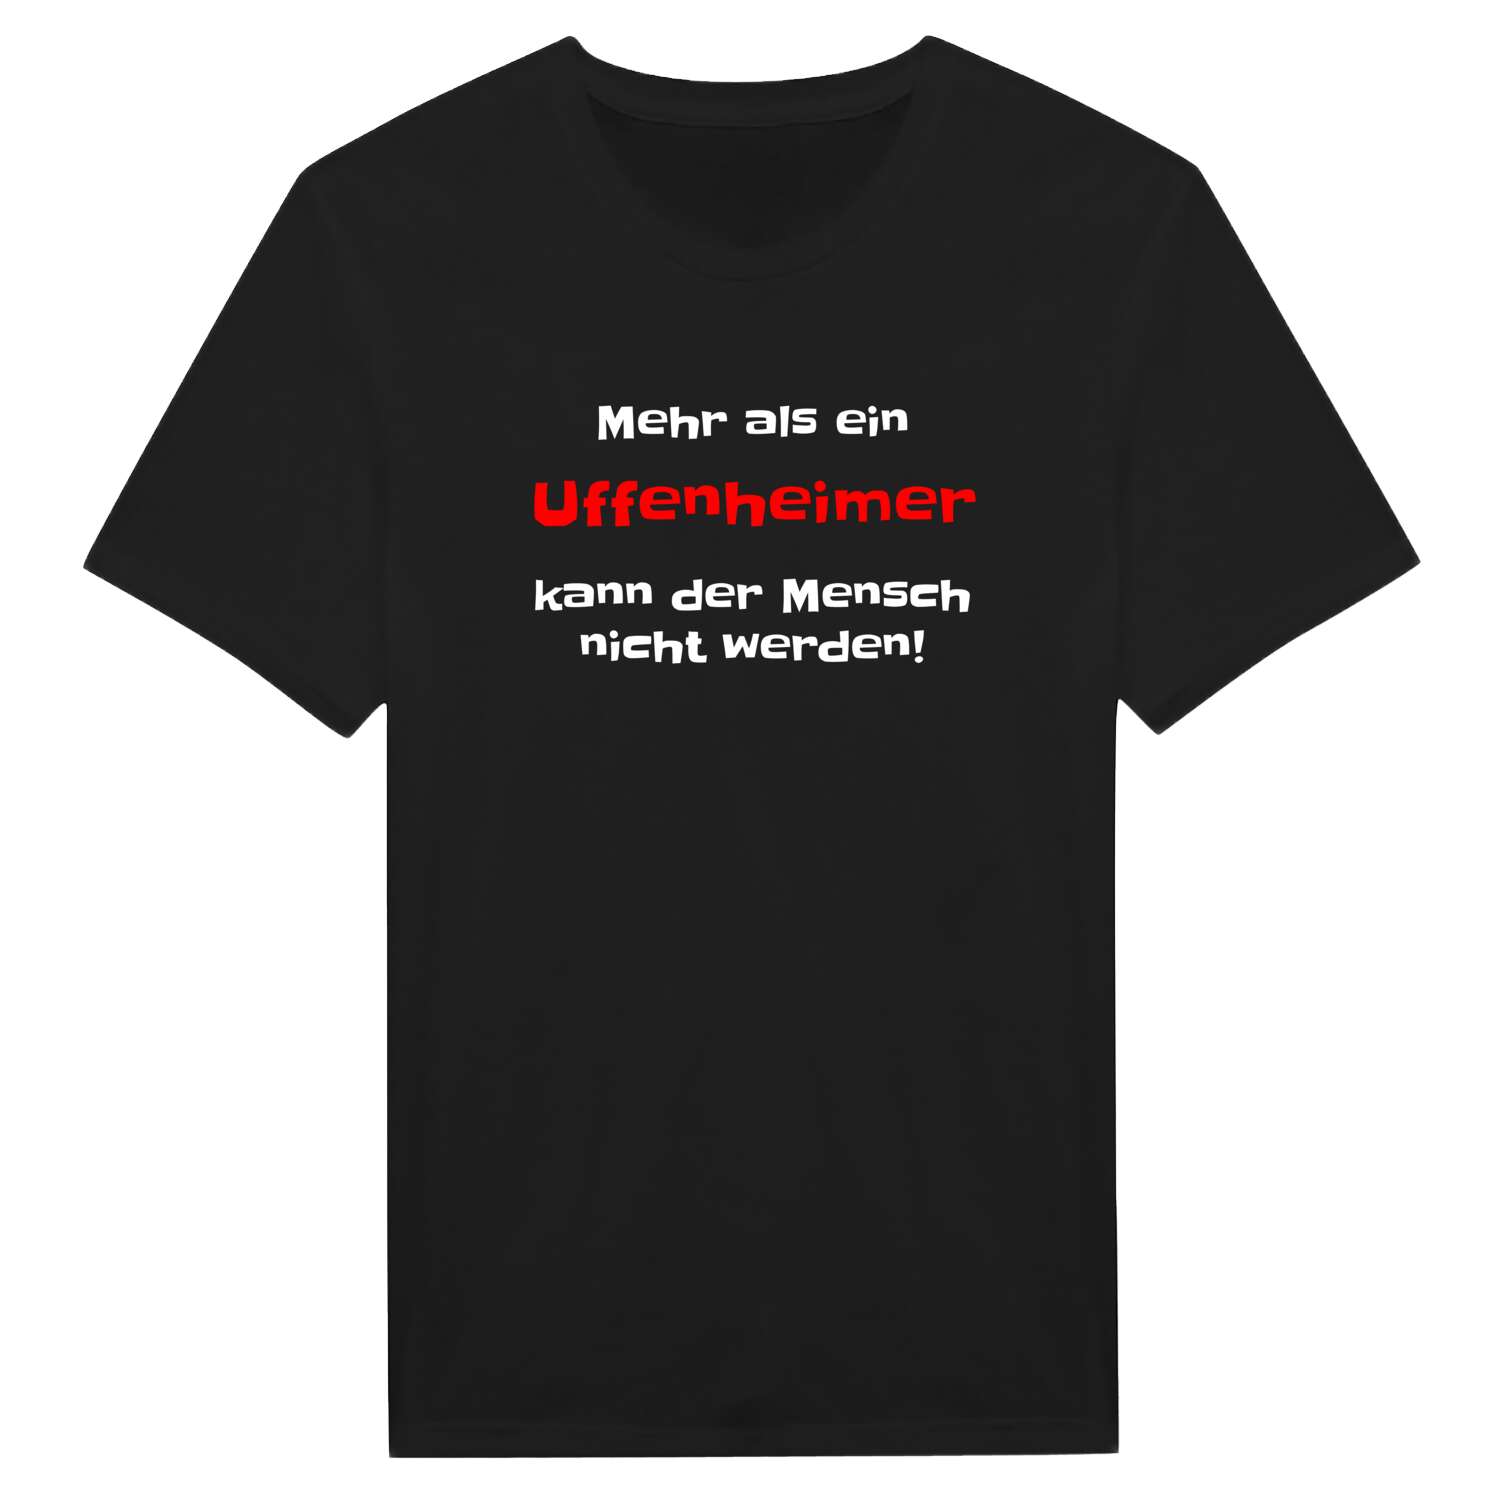 Uffenheim T-Shirt »Mehr als ein«